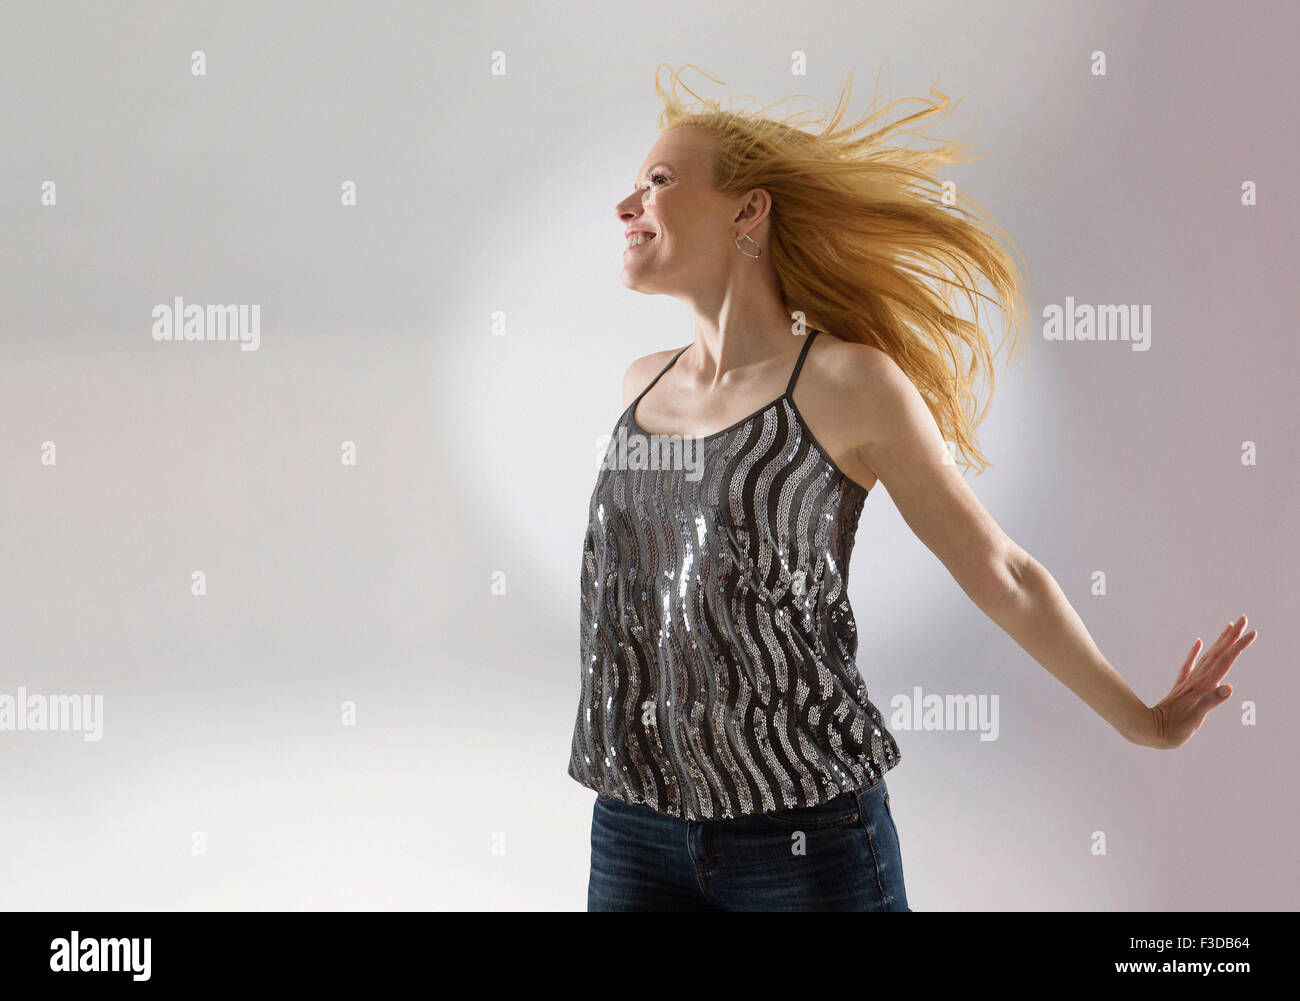 Happy woman dancing in studio Banque D'Images